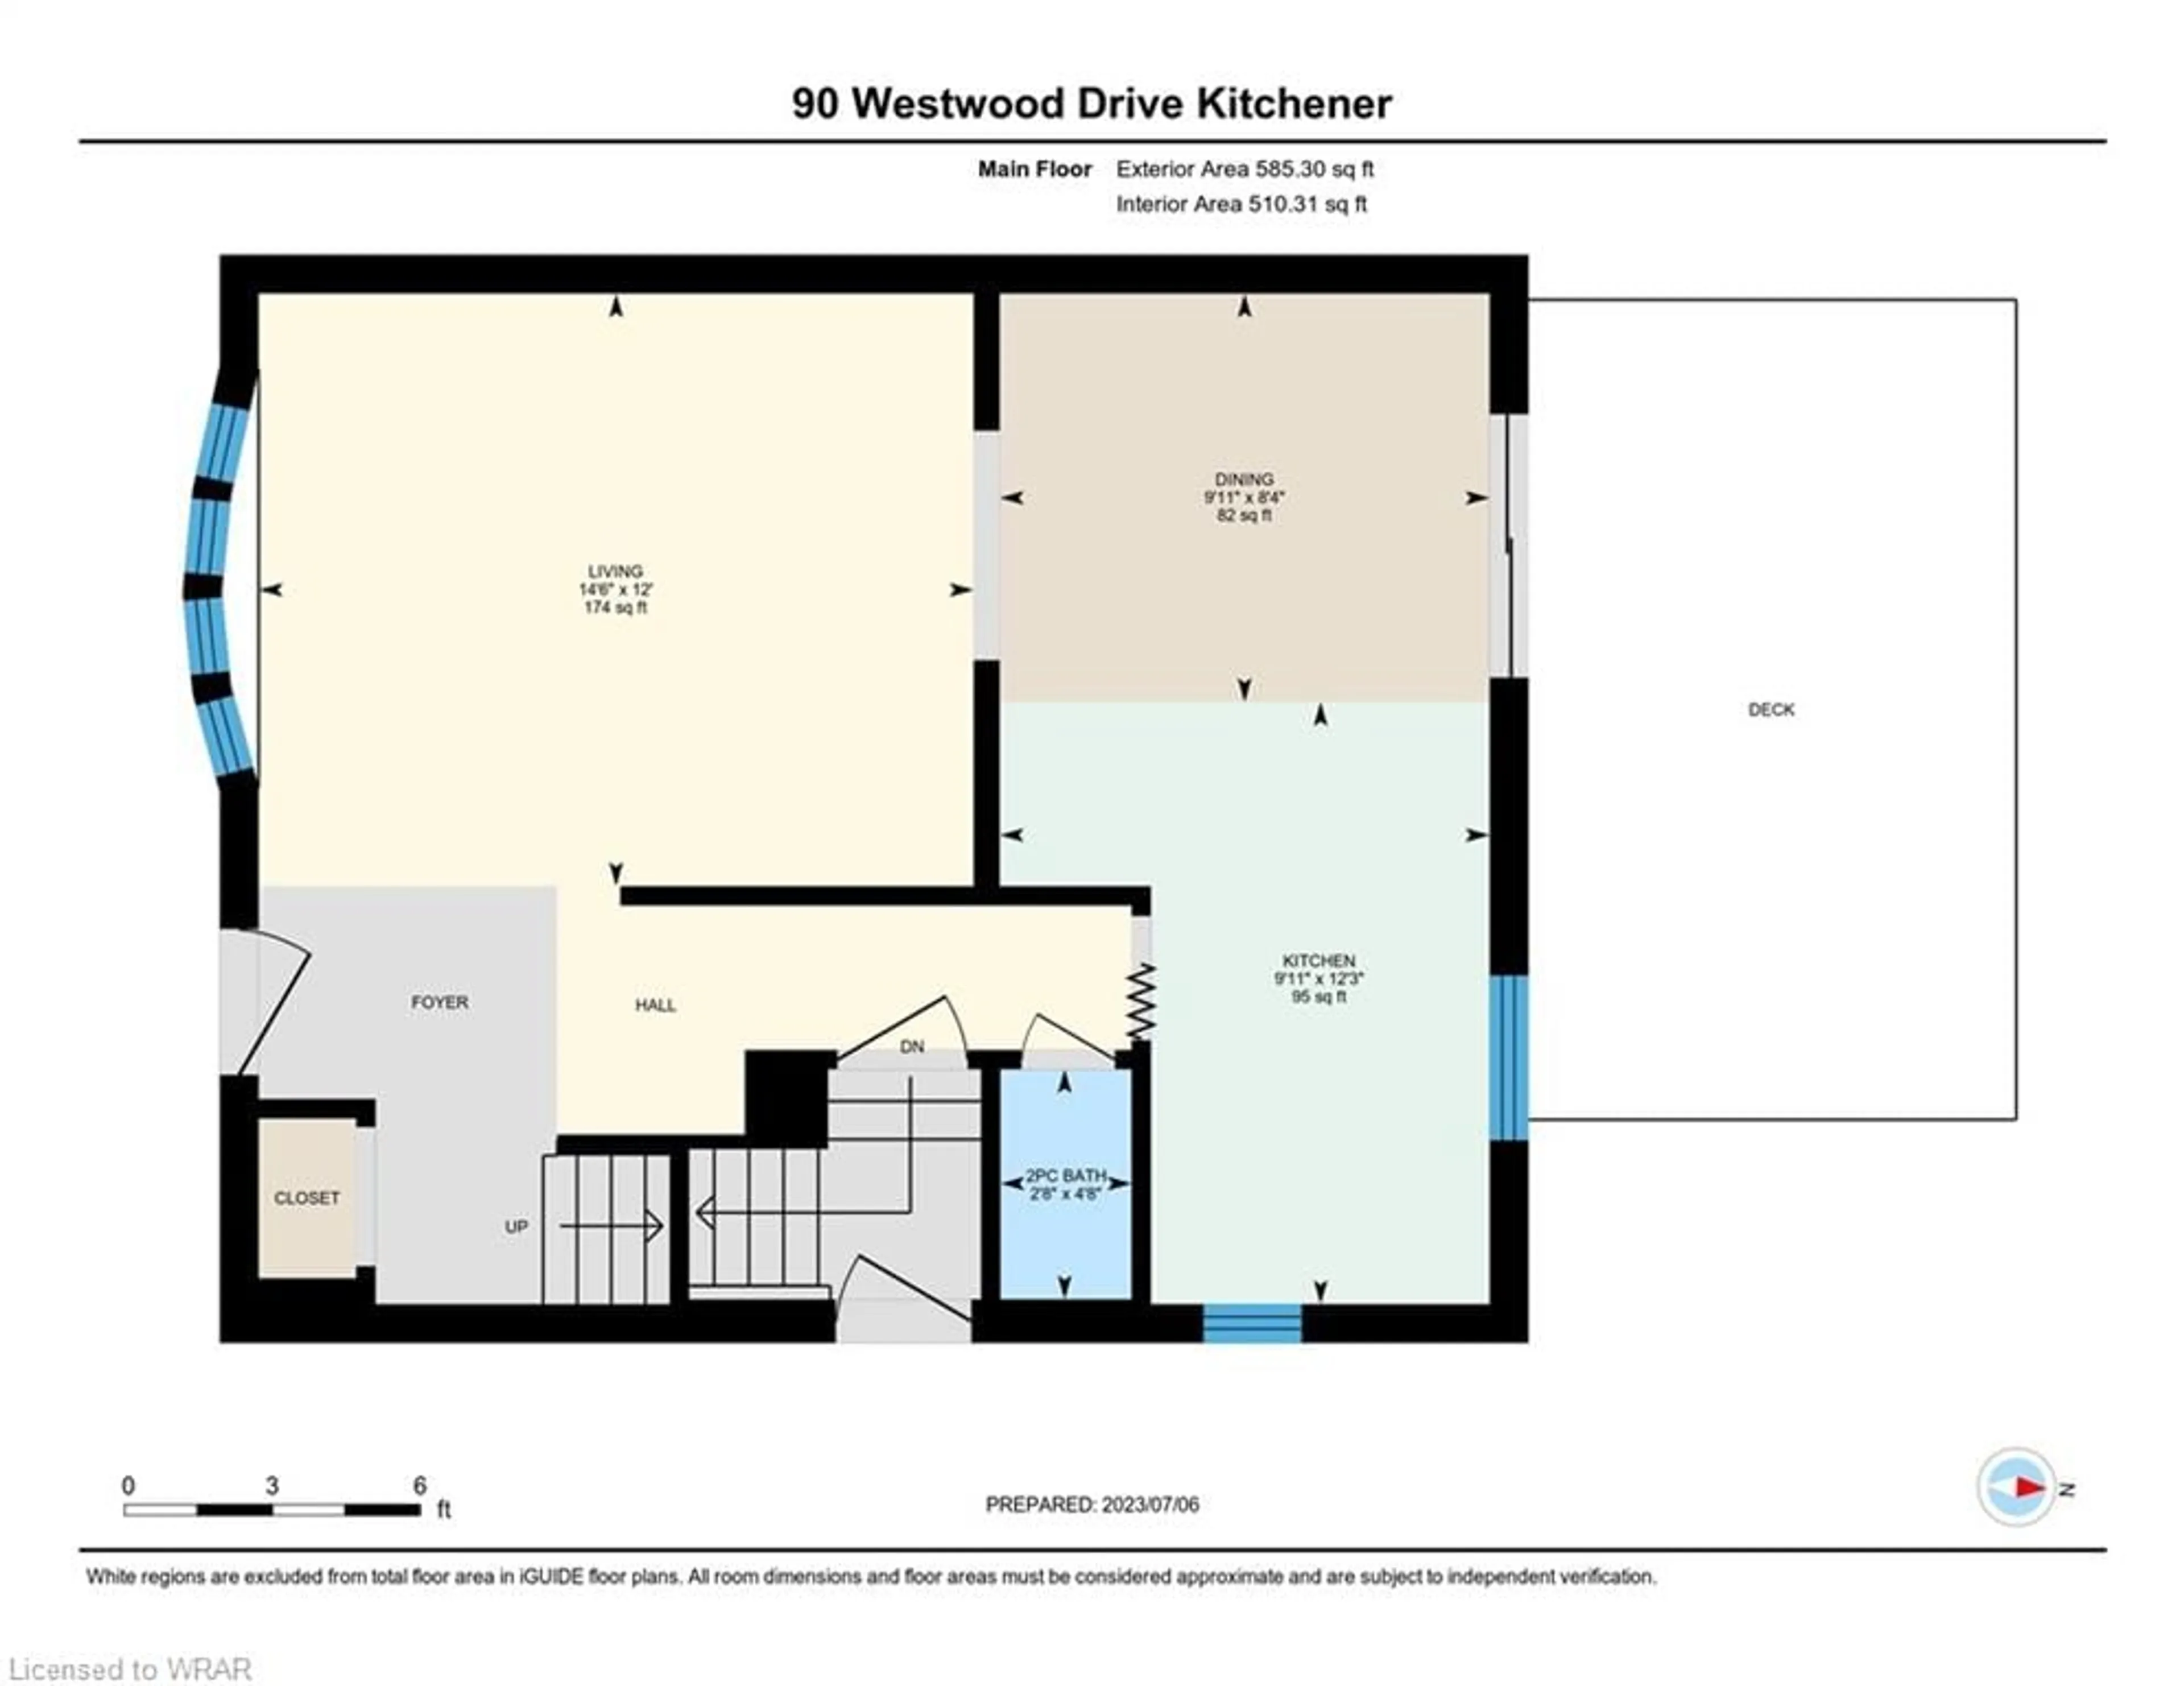 Floor plan for 90 Westwood Dr, Kitchener Ontario N2M 2K6